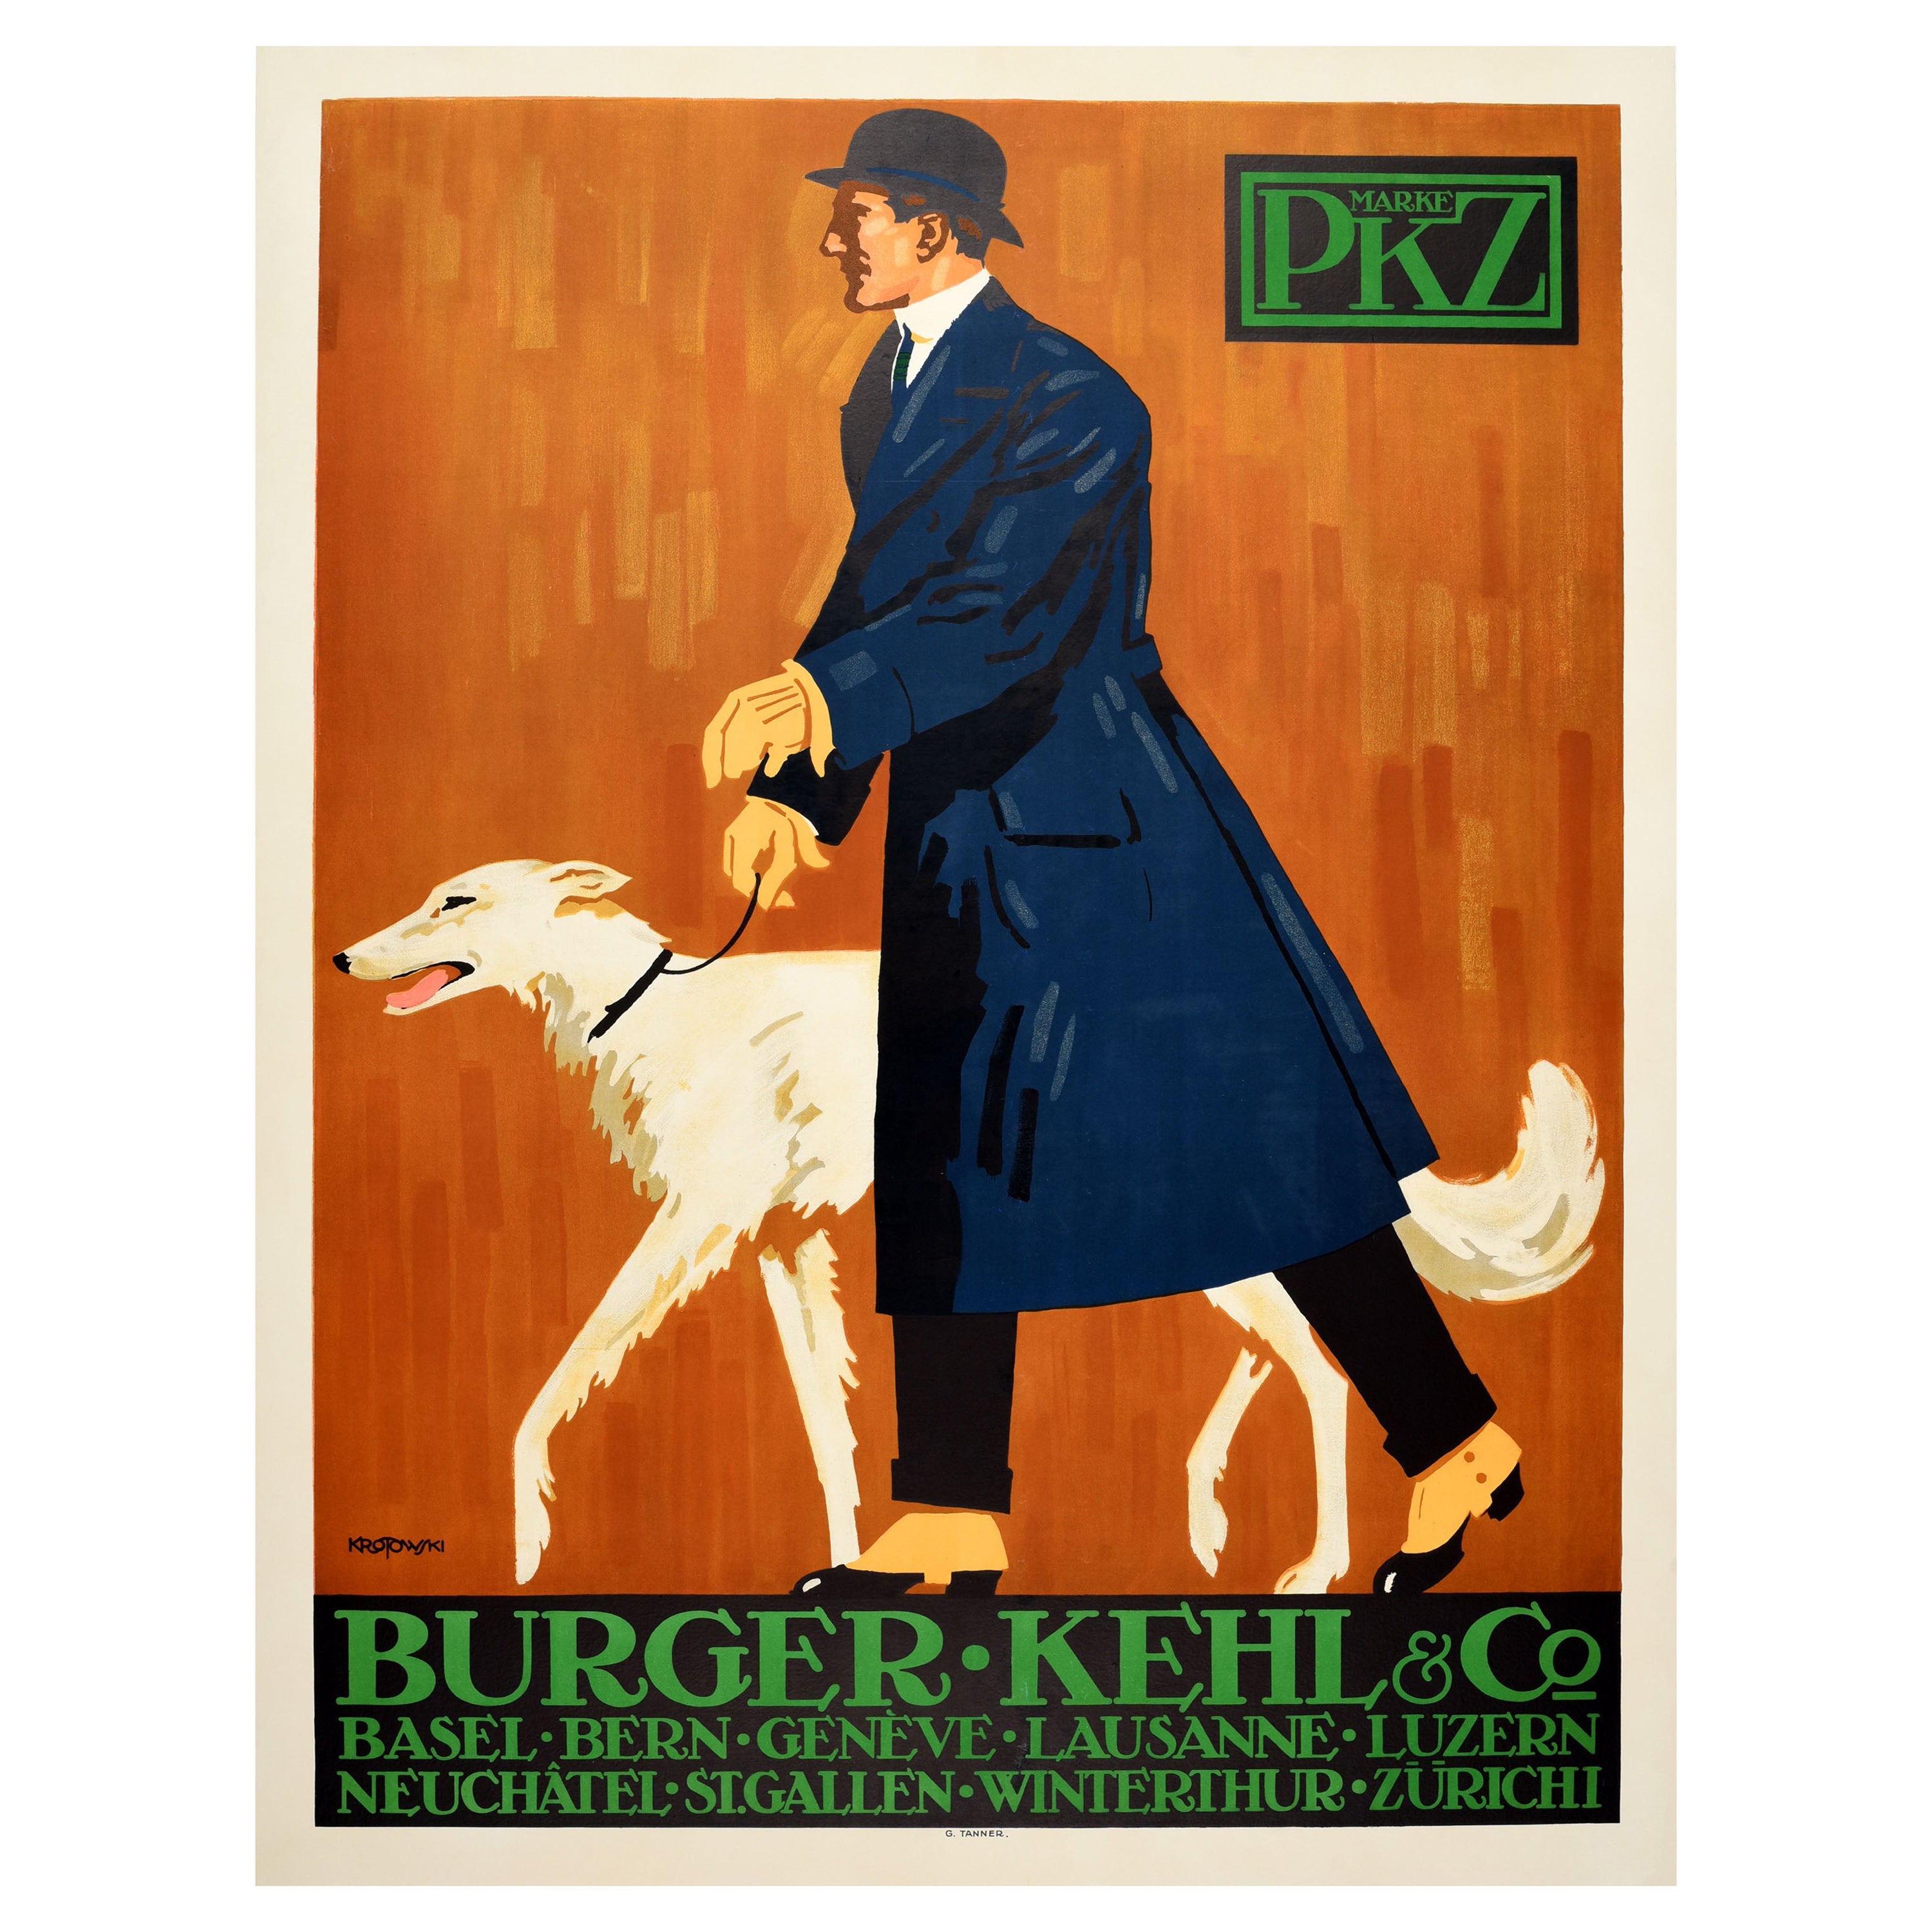 Affiche publicitaire originale ancienne pour hommes PKZ Burger Kehl & Co